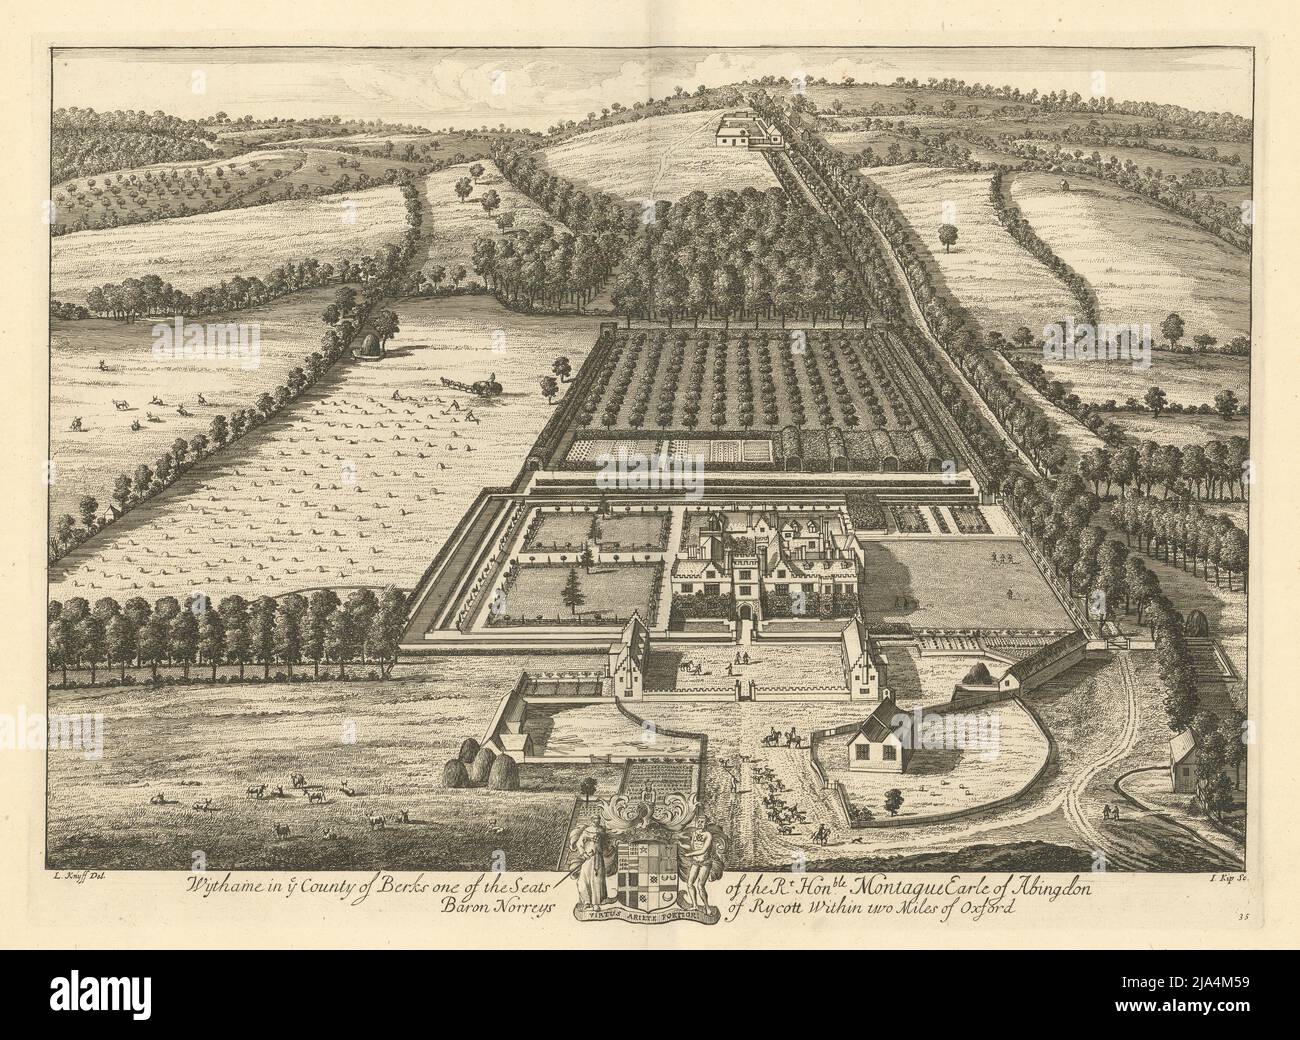 Wytham Abbey, Oxford von Kip & Knyff. 'Wythame in Ye County of Berks' 1709 Stockfoto